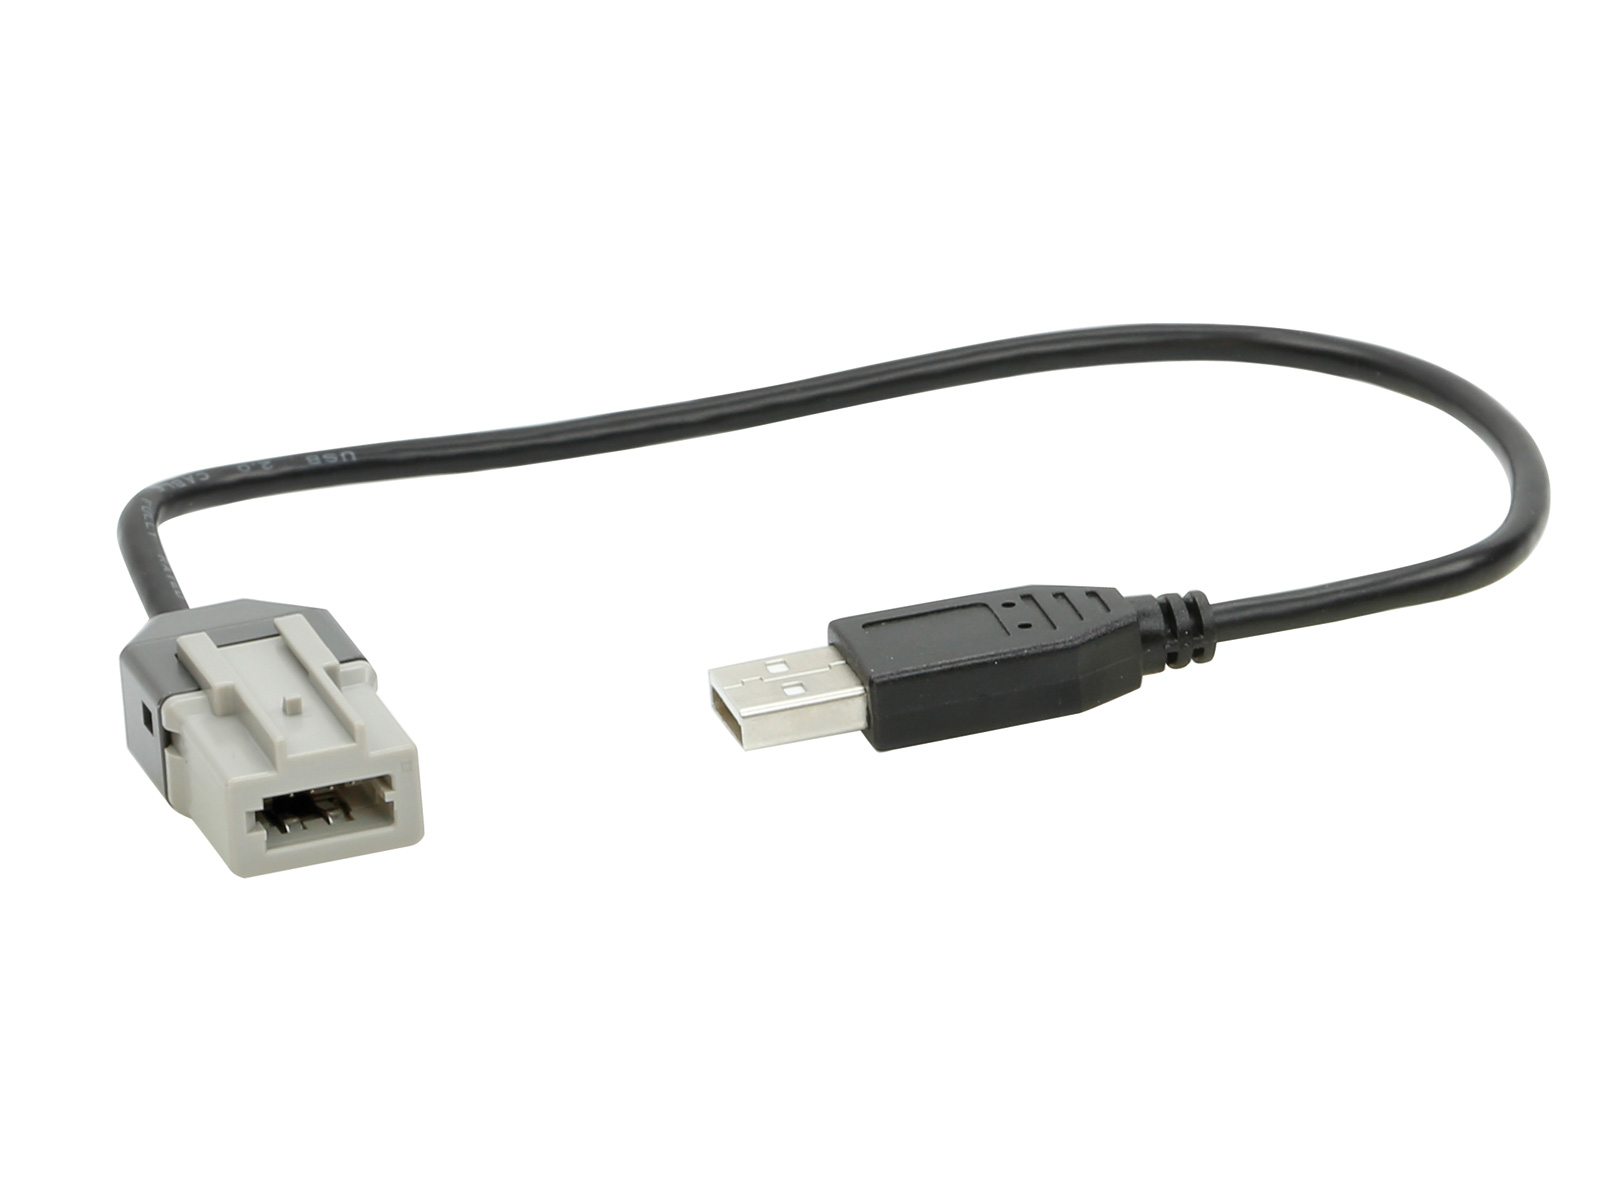 AUX / USB Anschlusskabel kompatibel mit Peugeot alle Modelle 